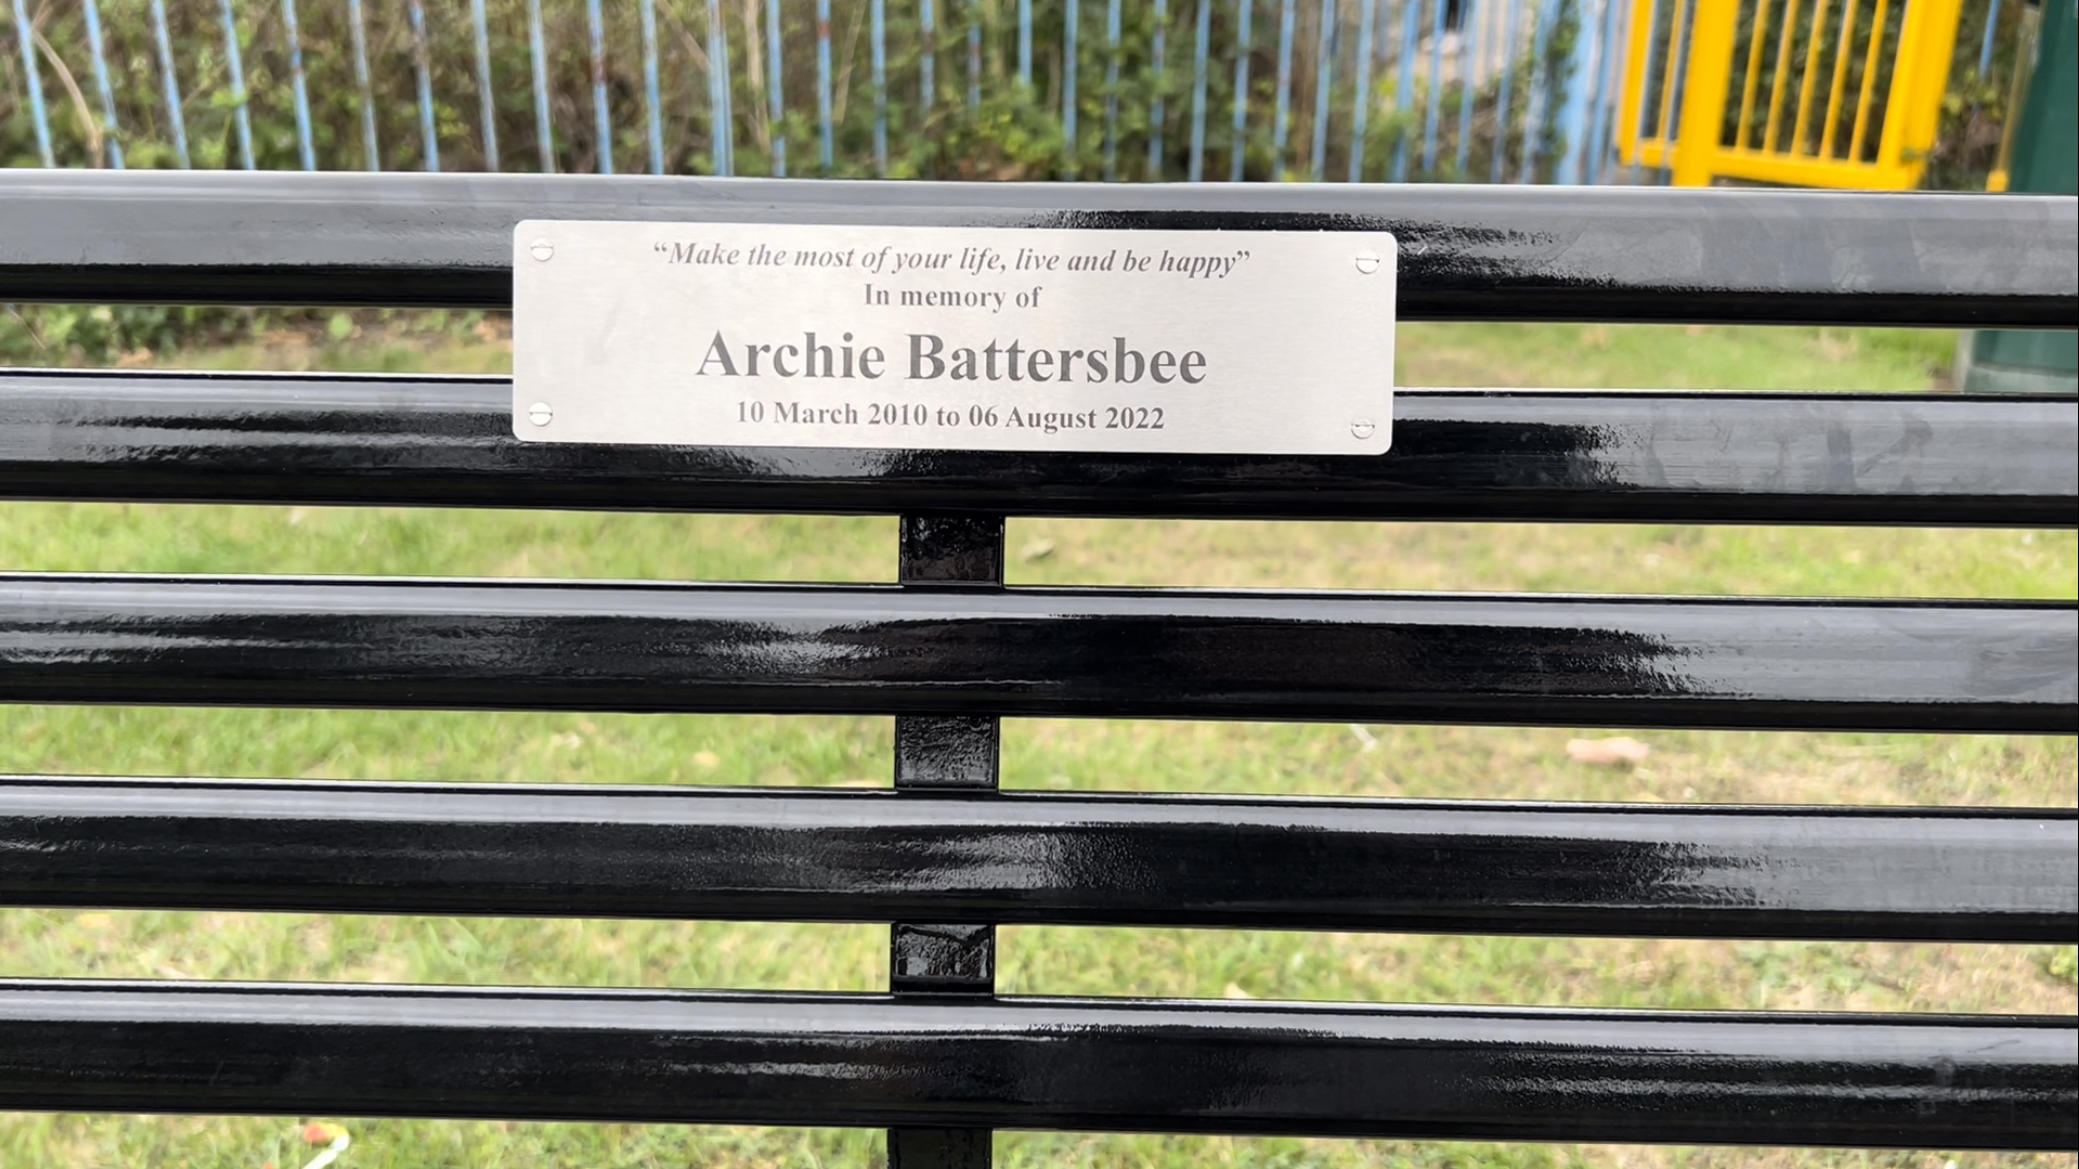 "Mach das Meiste aus deinem Leben, lebe und sei glücklich. In Erinnerung an Archie Battersbee" steht auf der Parkbank. Seine Mutter Hollie Dance hat sie auf einem Spielplatz aufgebaut und am Tag von Archies Trauergottesdienst enthüllt.